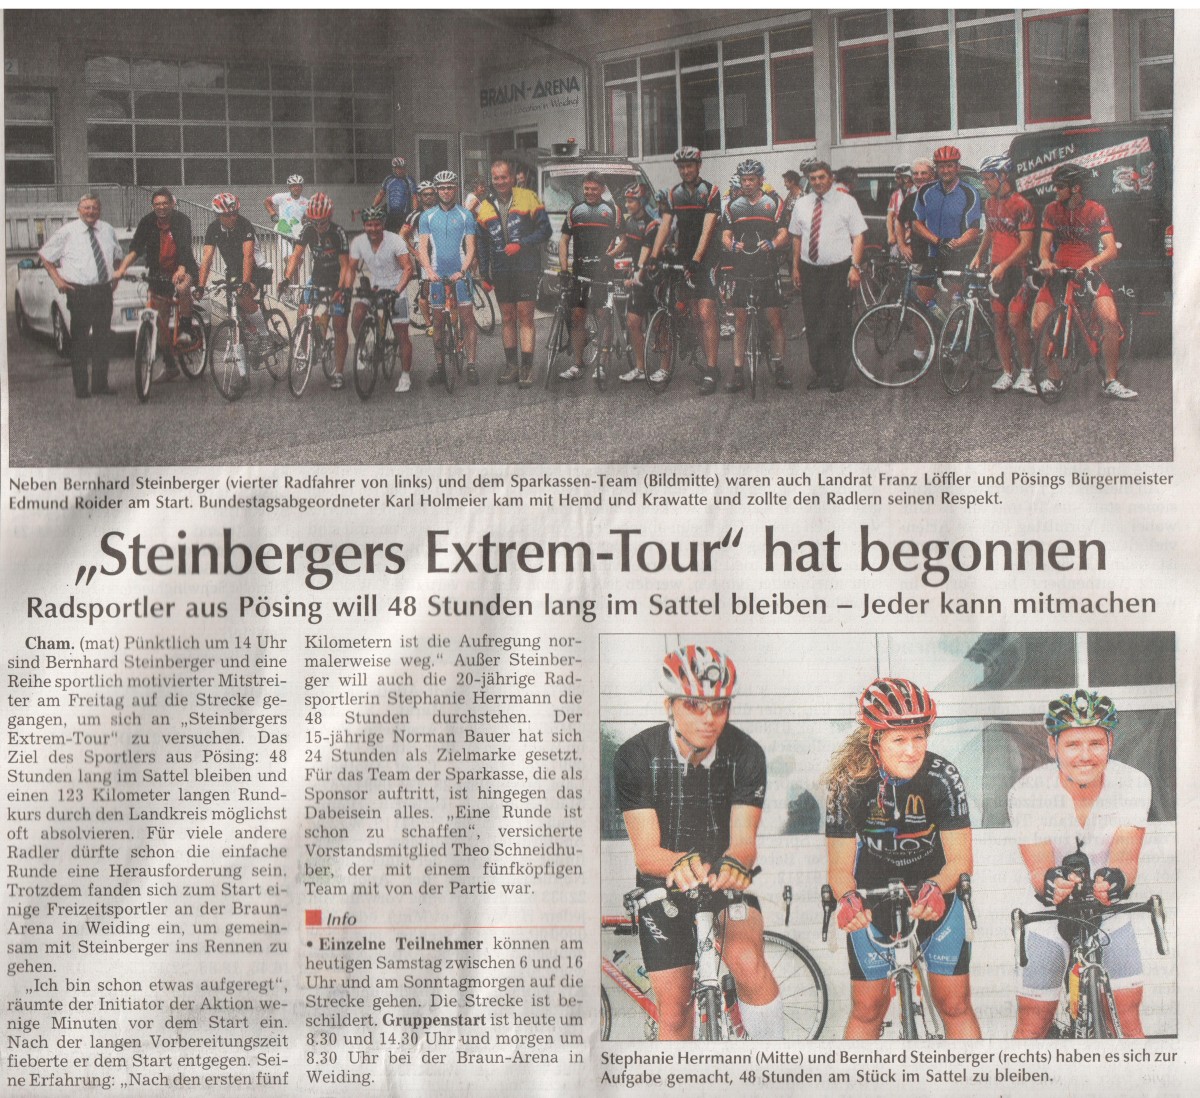 Steinbergers Extrem-Tour hat begonnen